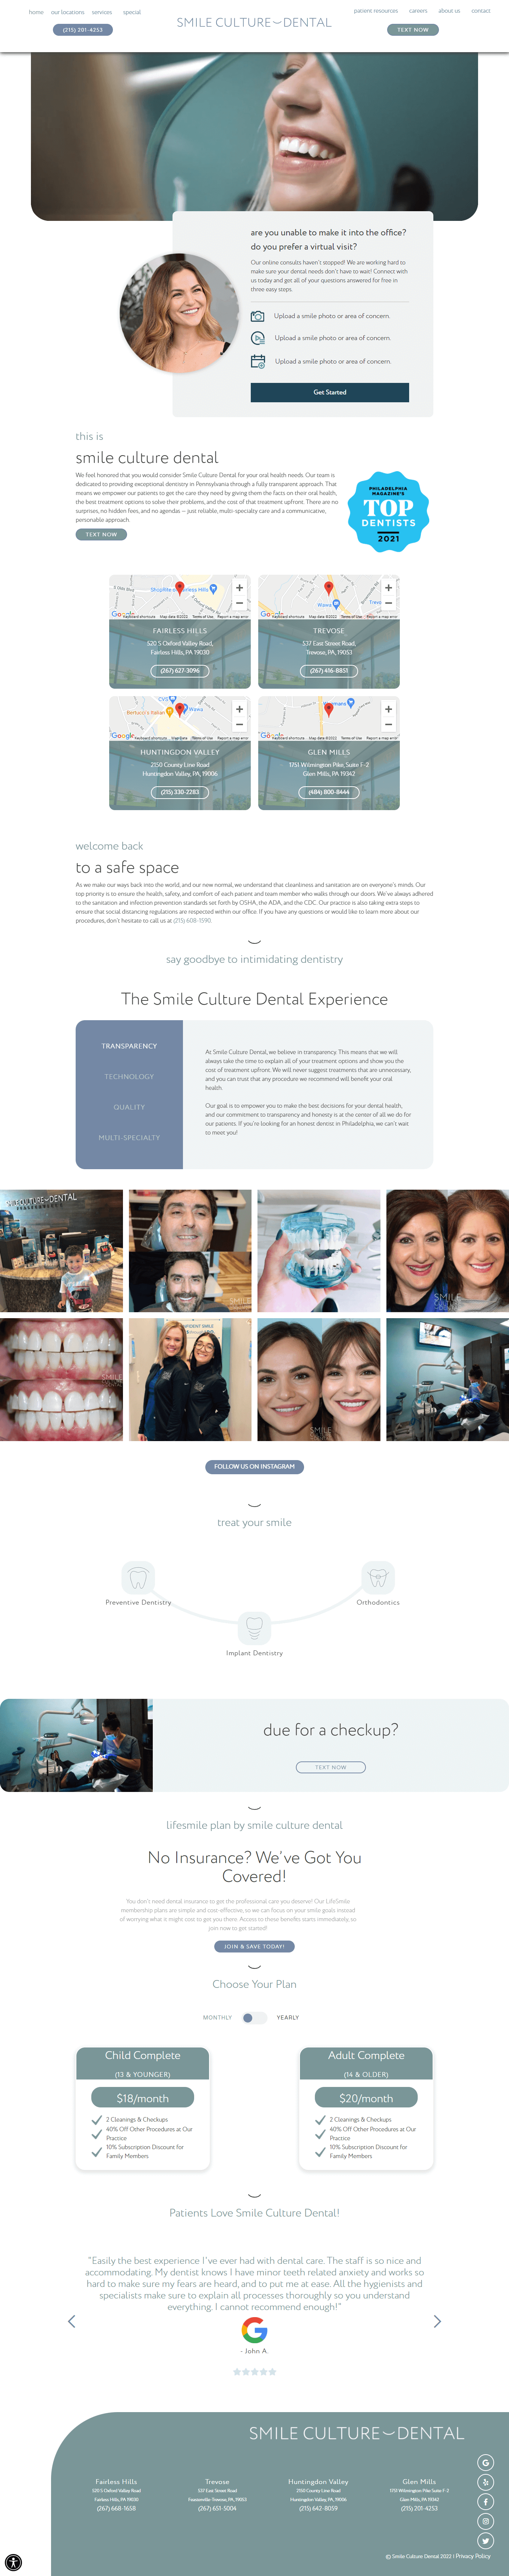 Smile Culture Dental